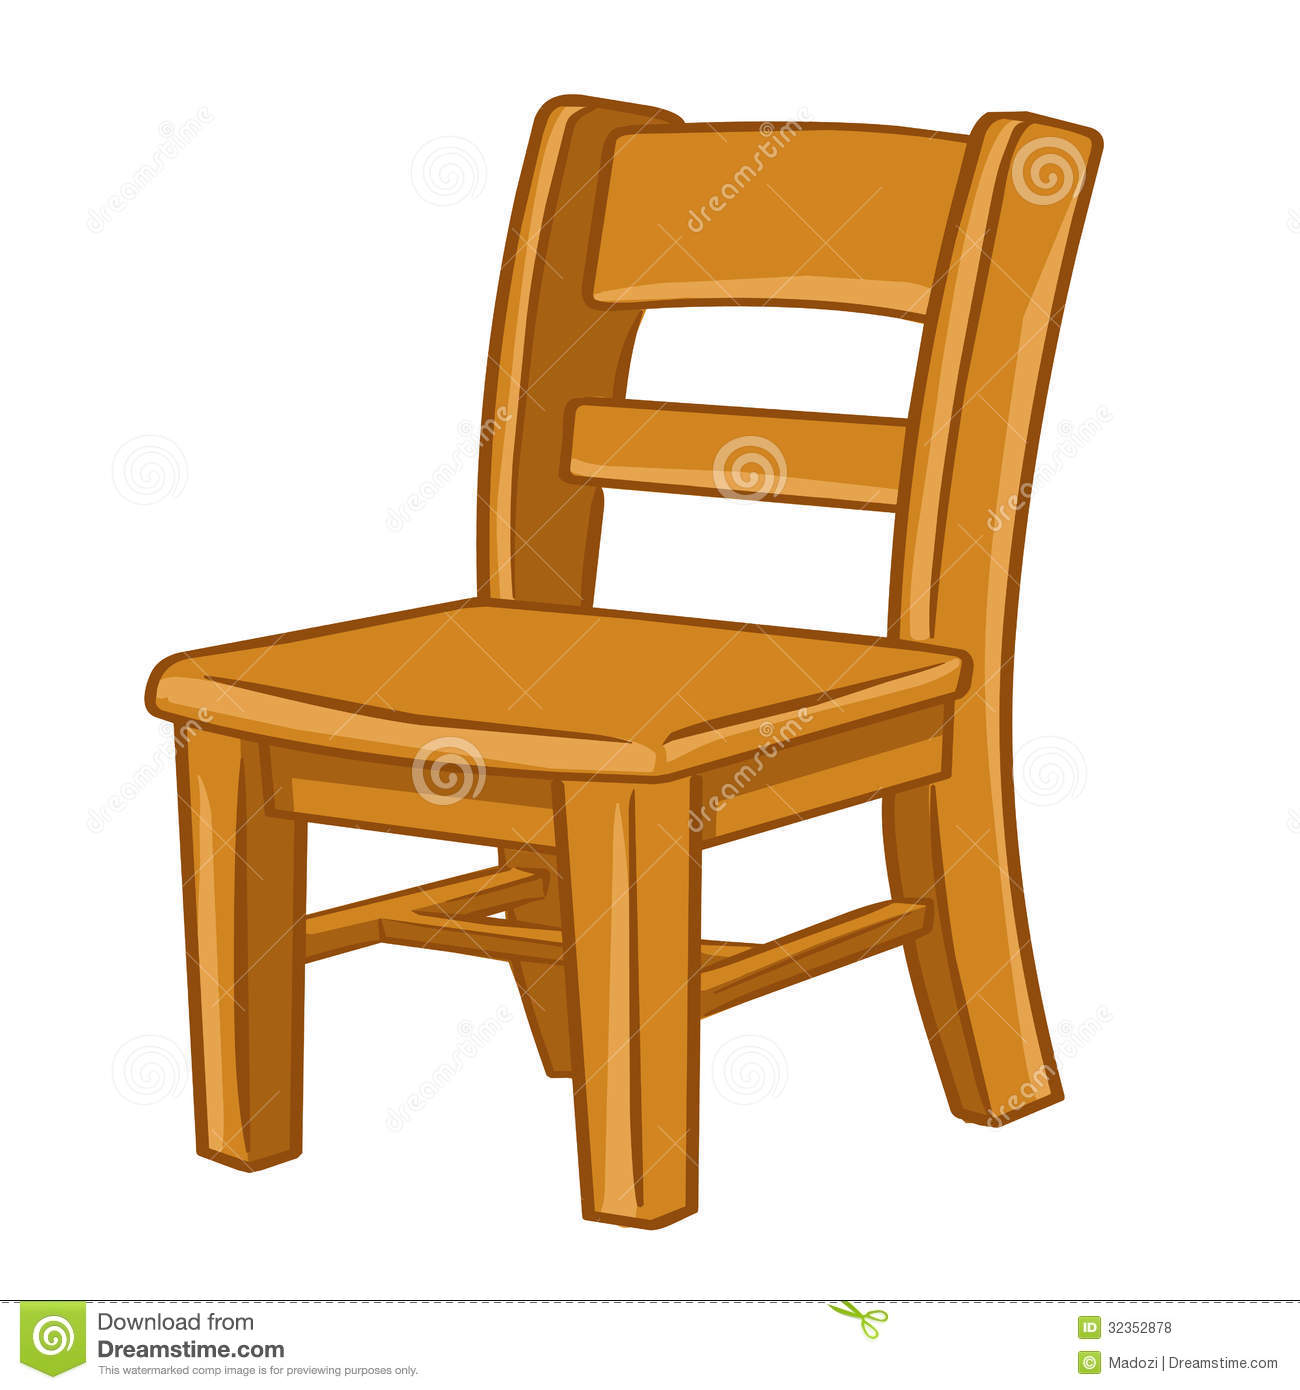 chair clipart - Chairs Clipart